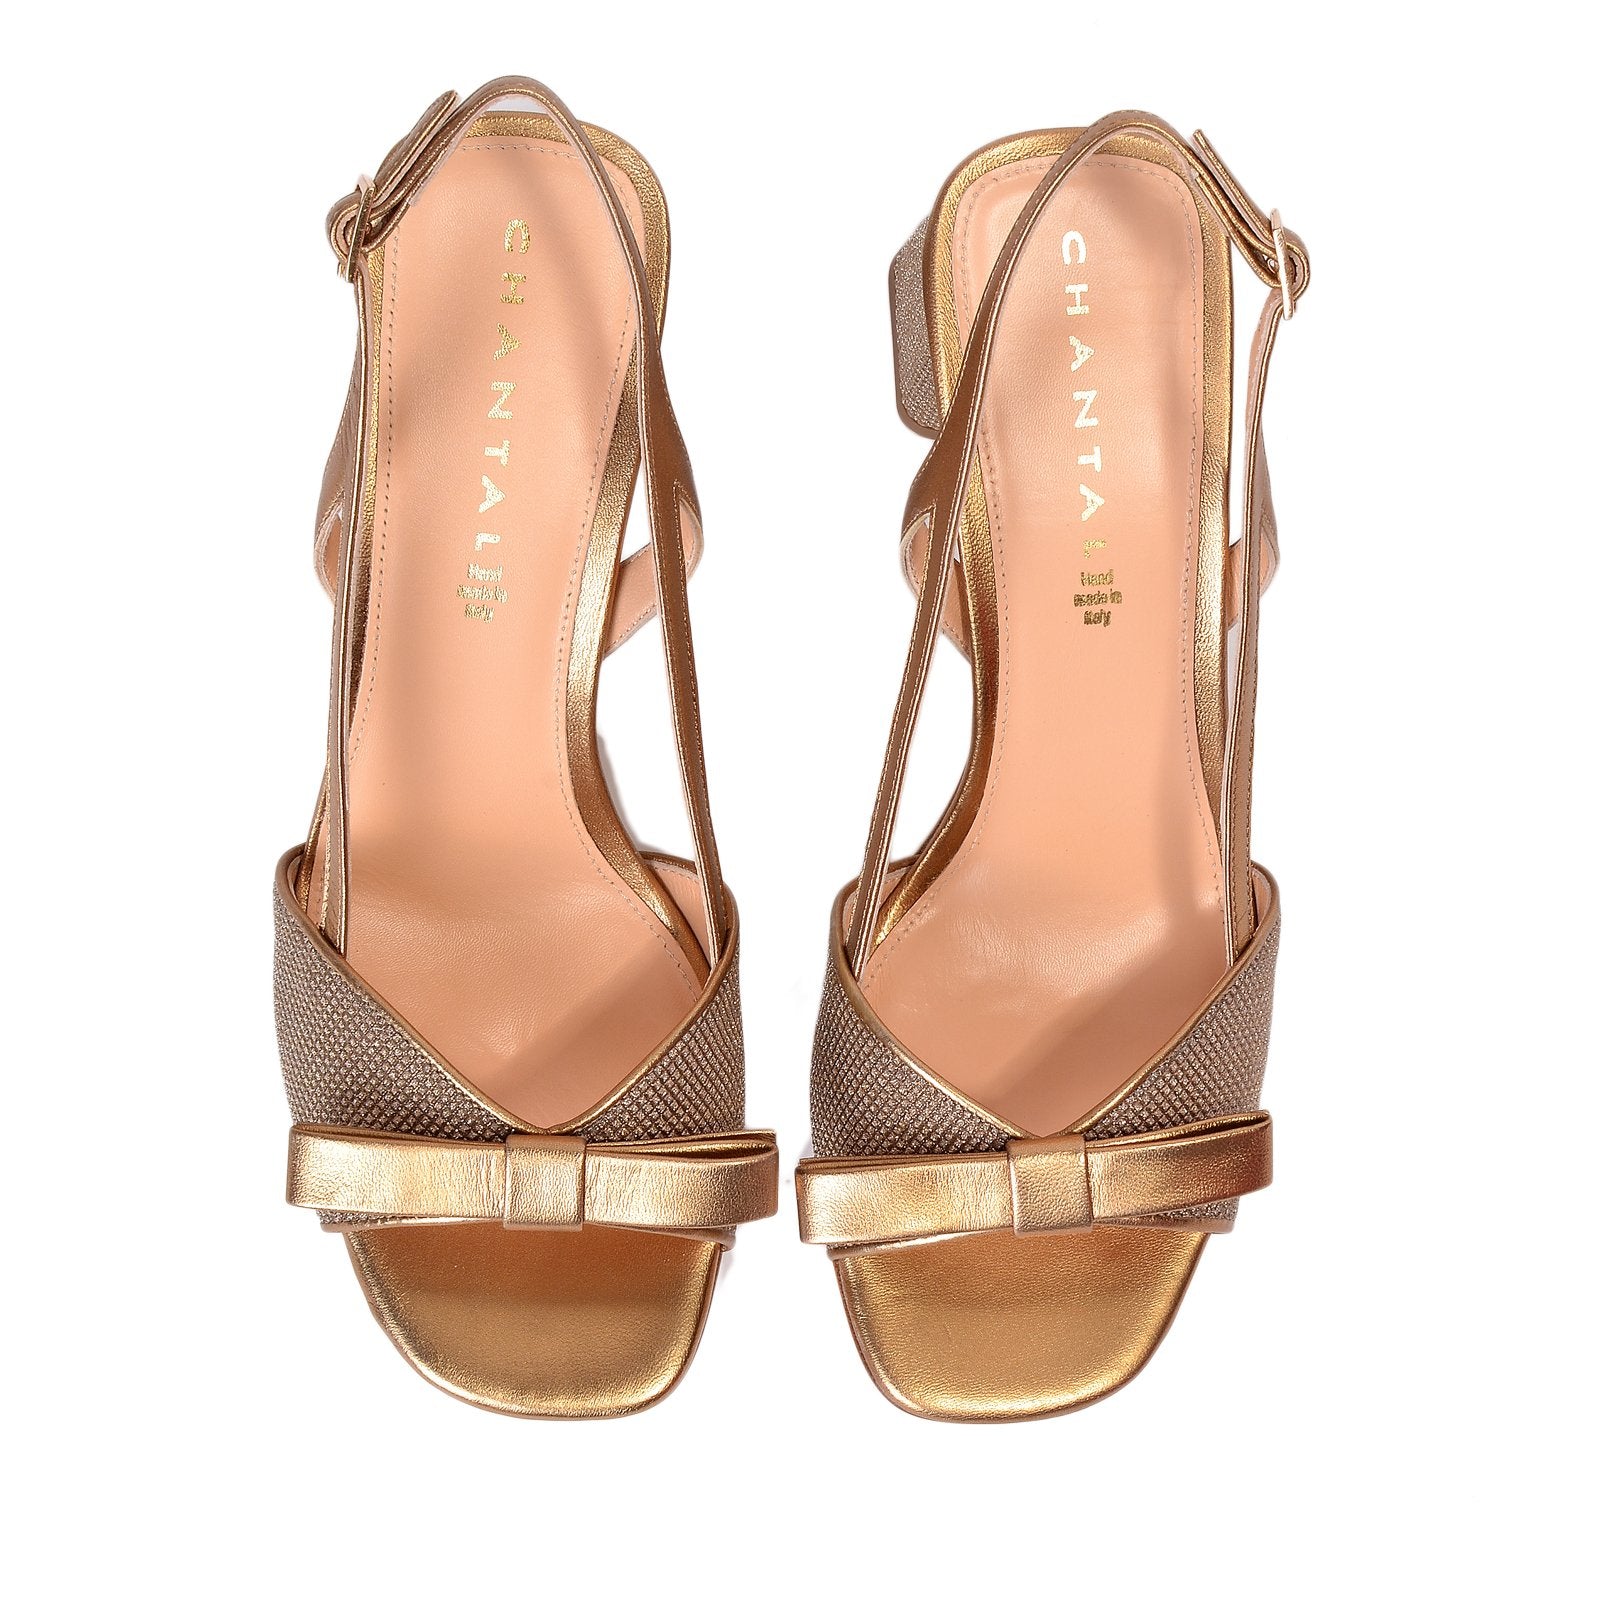 Luxor Bow Glitter Sandals  Heels 1103/Gold - 4